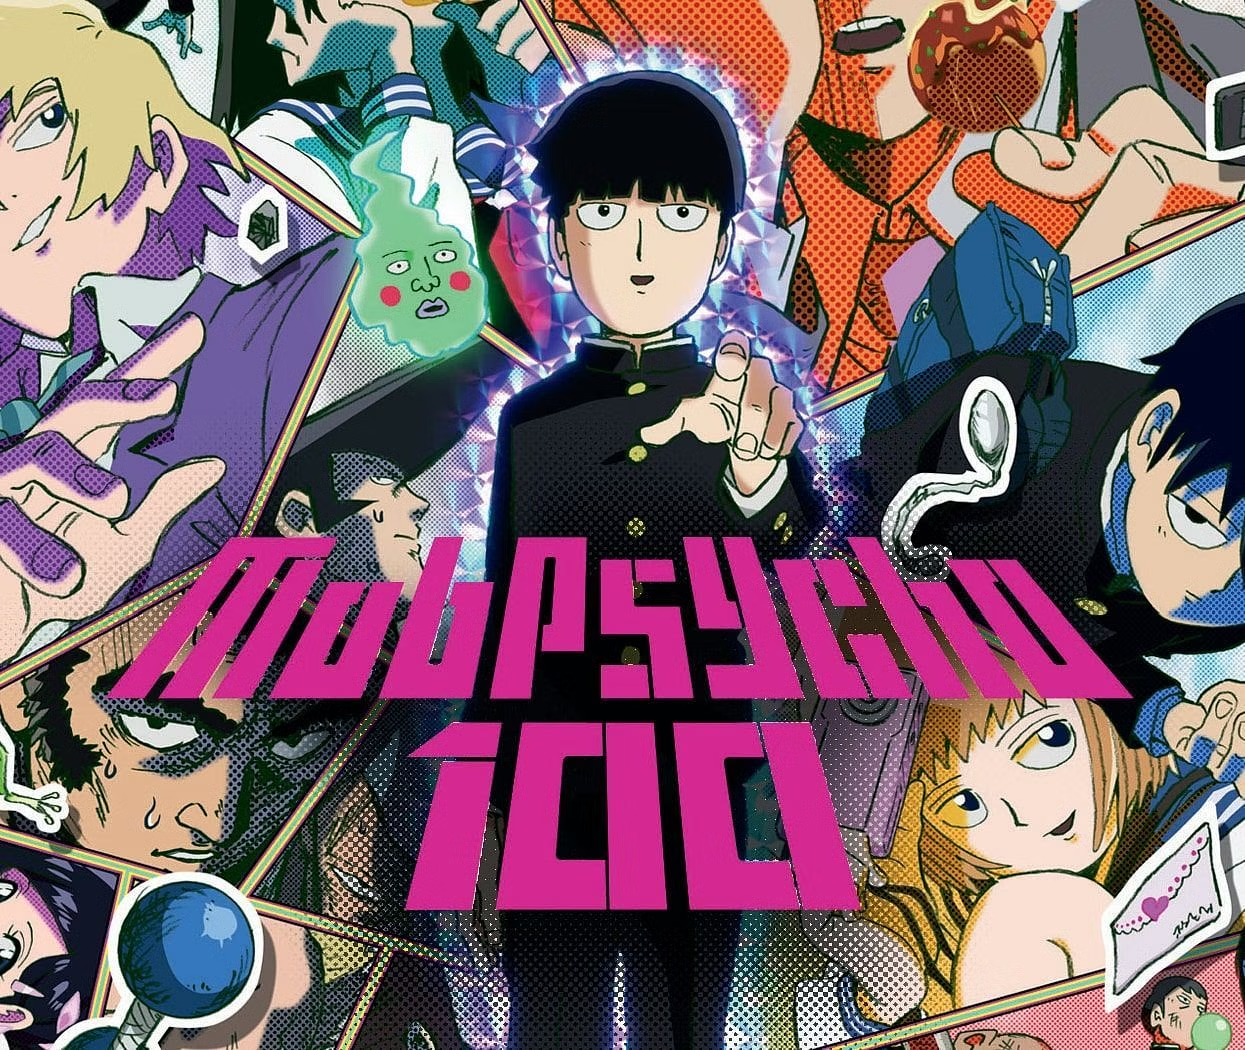 Mob Psycho 100